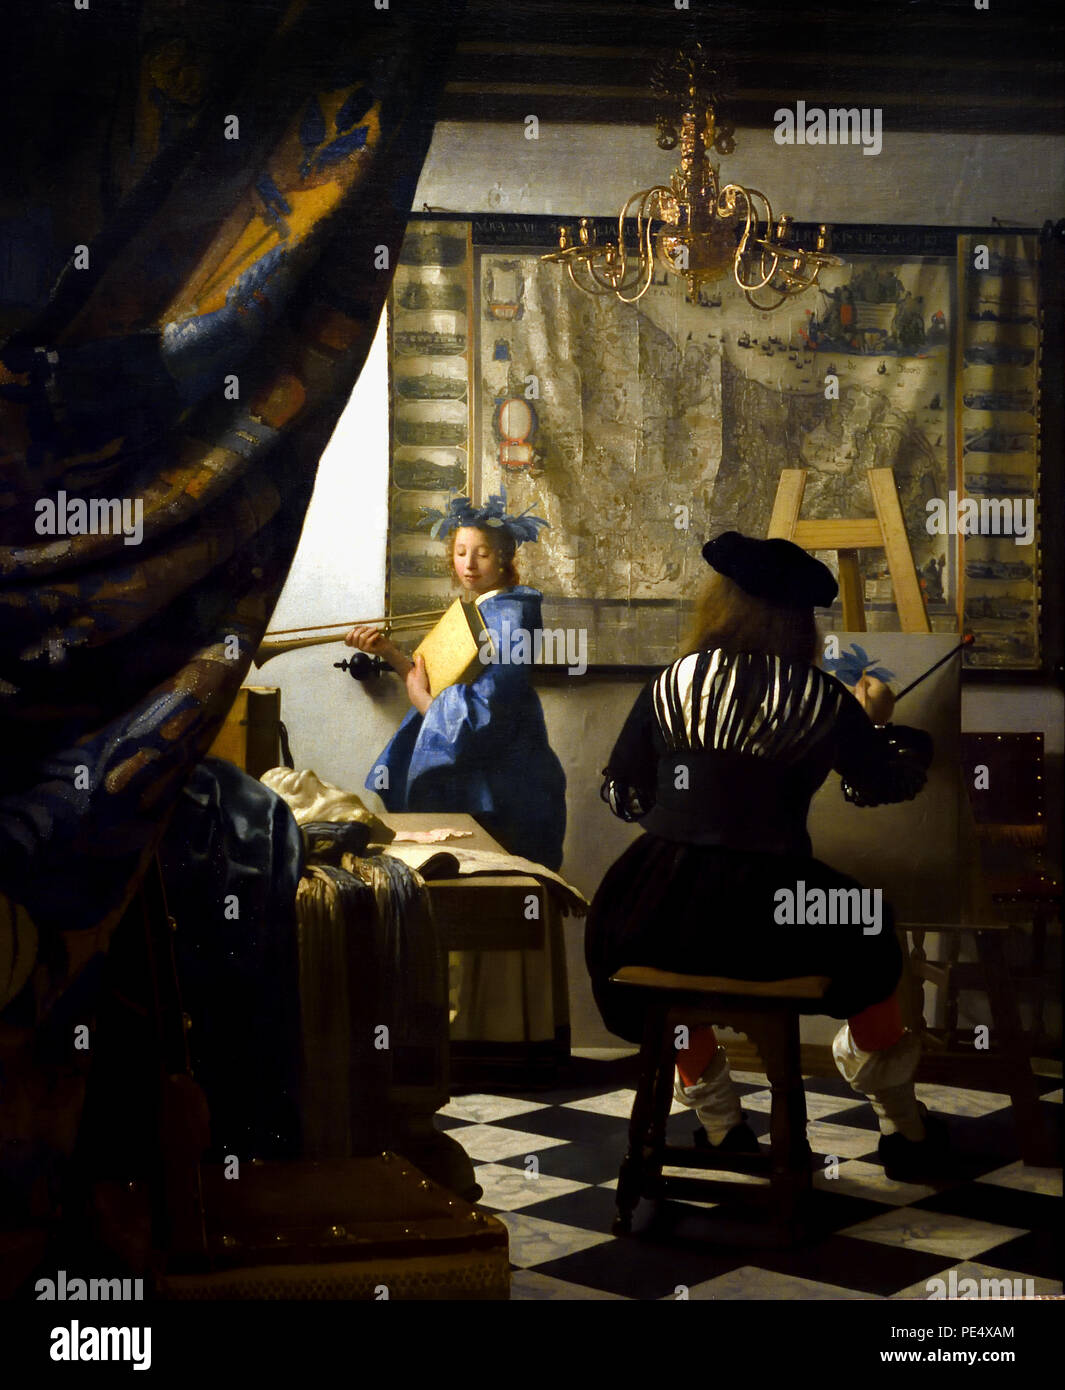 El arte de la pintura, también conocido como la alegoría de la pintura, o pintor en su estudio por Johannes Vermeer 1632 - 1675 Los Países Bajos, holandés, ( El arte de la pintura con la representación del pintor en el estudio Vermeer exagera la imagen de género a una alegoría de la pintura. Su modelo se hace pasar por Klio (pintor holandés en la Edad de Oro, uno de los más grandes pintores, siglo 17th. preferimos momentos atemporales, tenues, sigue siendo enigmático, esquema de color inimitable y contenido de luz desconcertante) Foto de stock